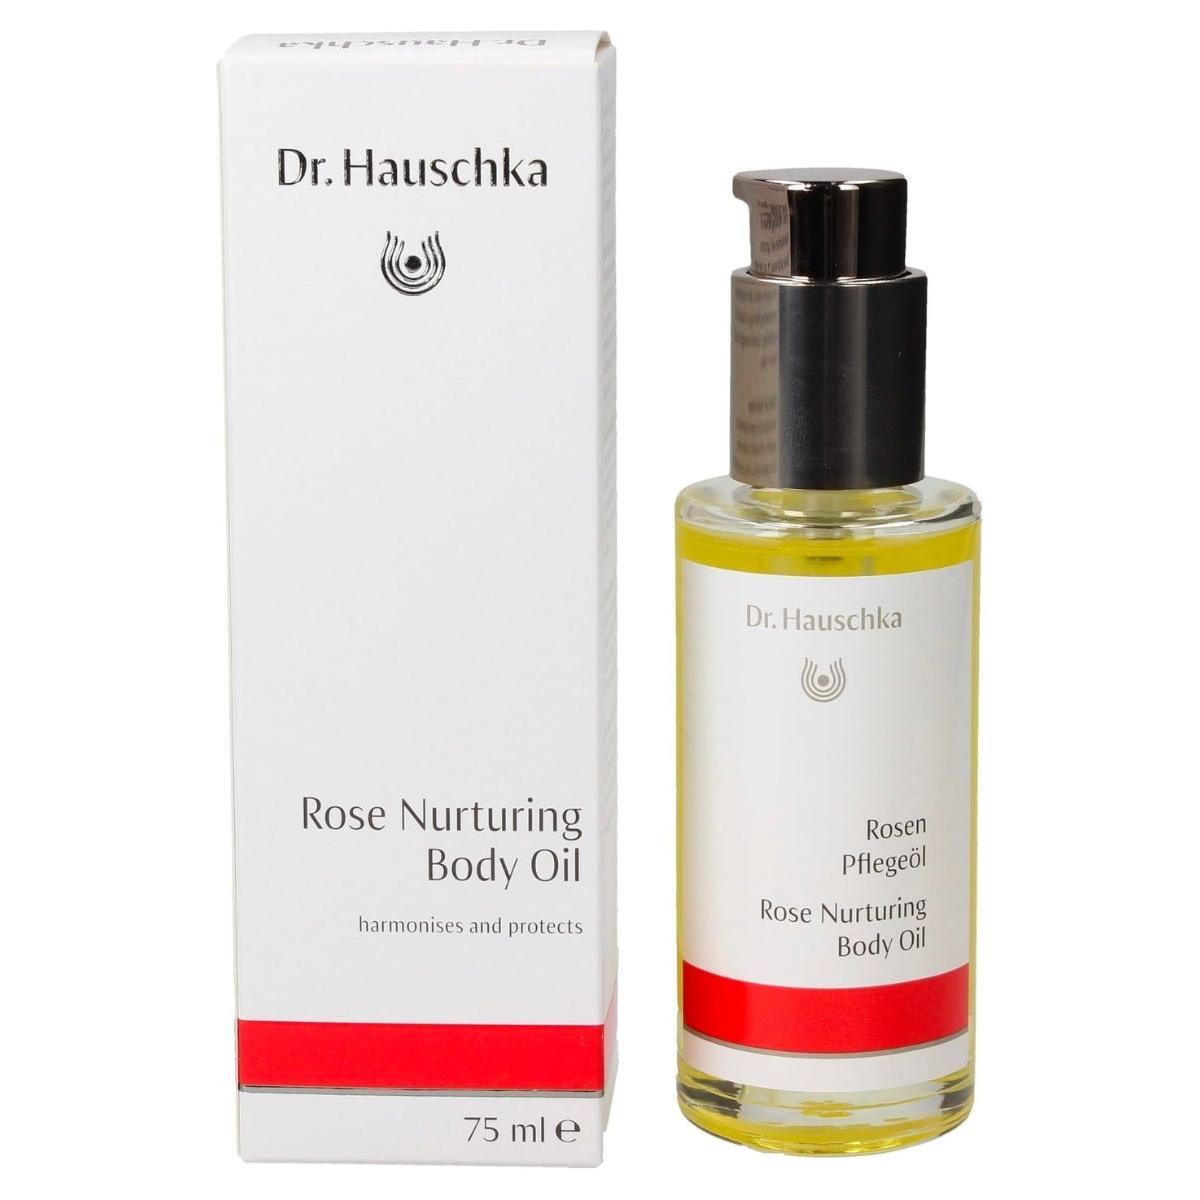 Dr. Hauschka | Rose Nurturing Body Oil | 75ml - DG International Ventures Limited